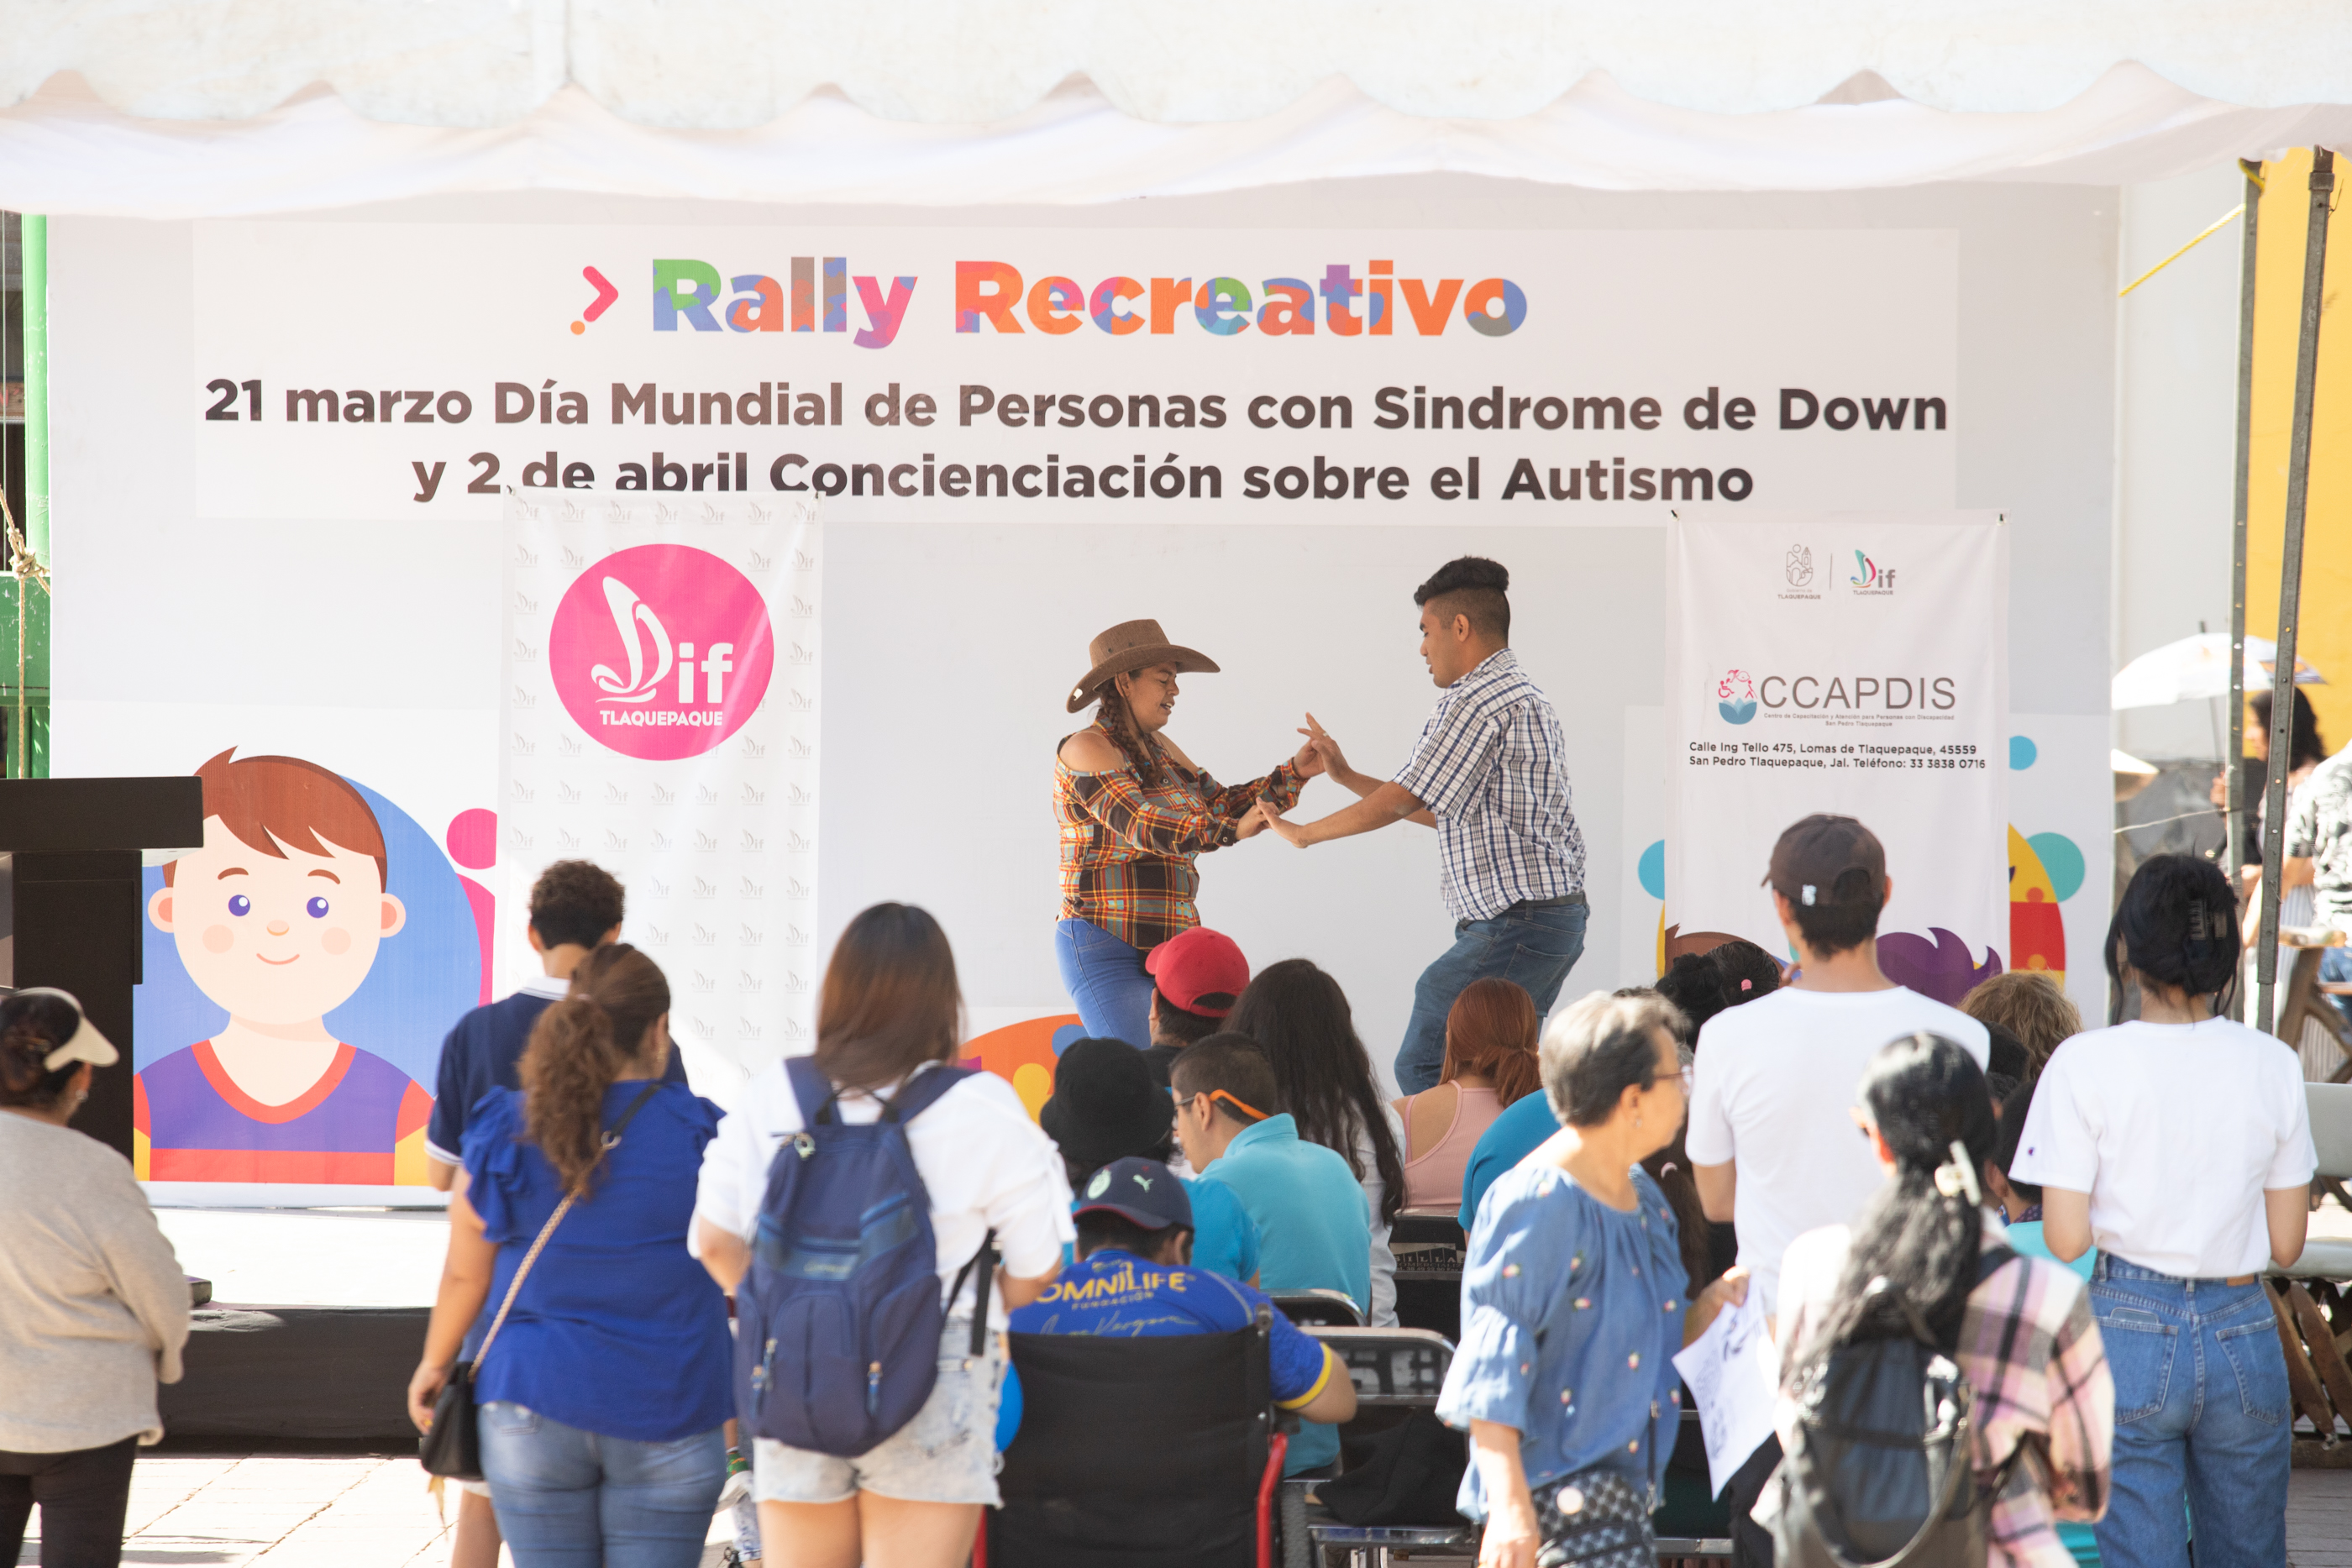 Rally Recreativo: Día Mundial de Personas con Síndrome de Down y Concienciación sobre Autismo